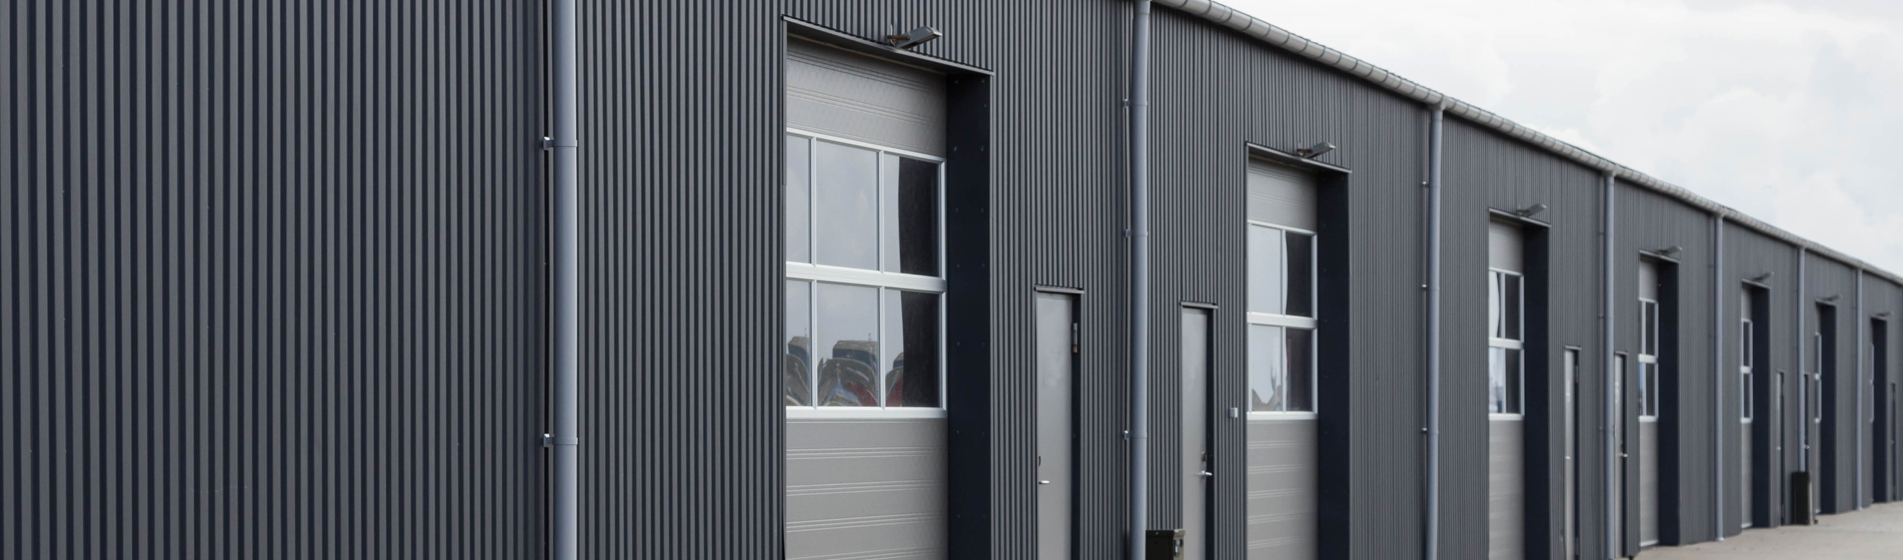 fabricant porte de garage aluminium 13300